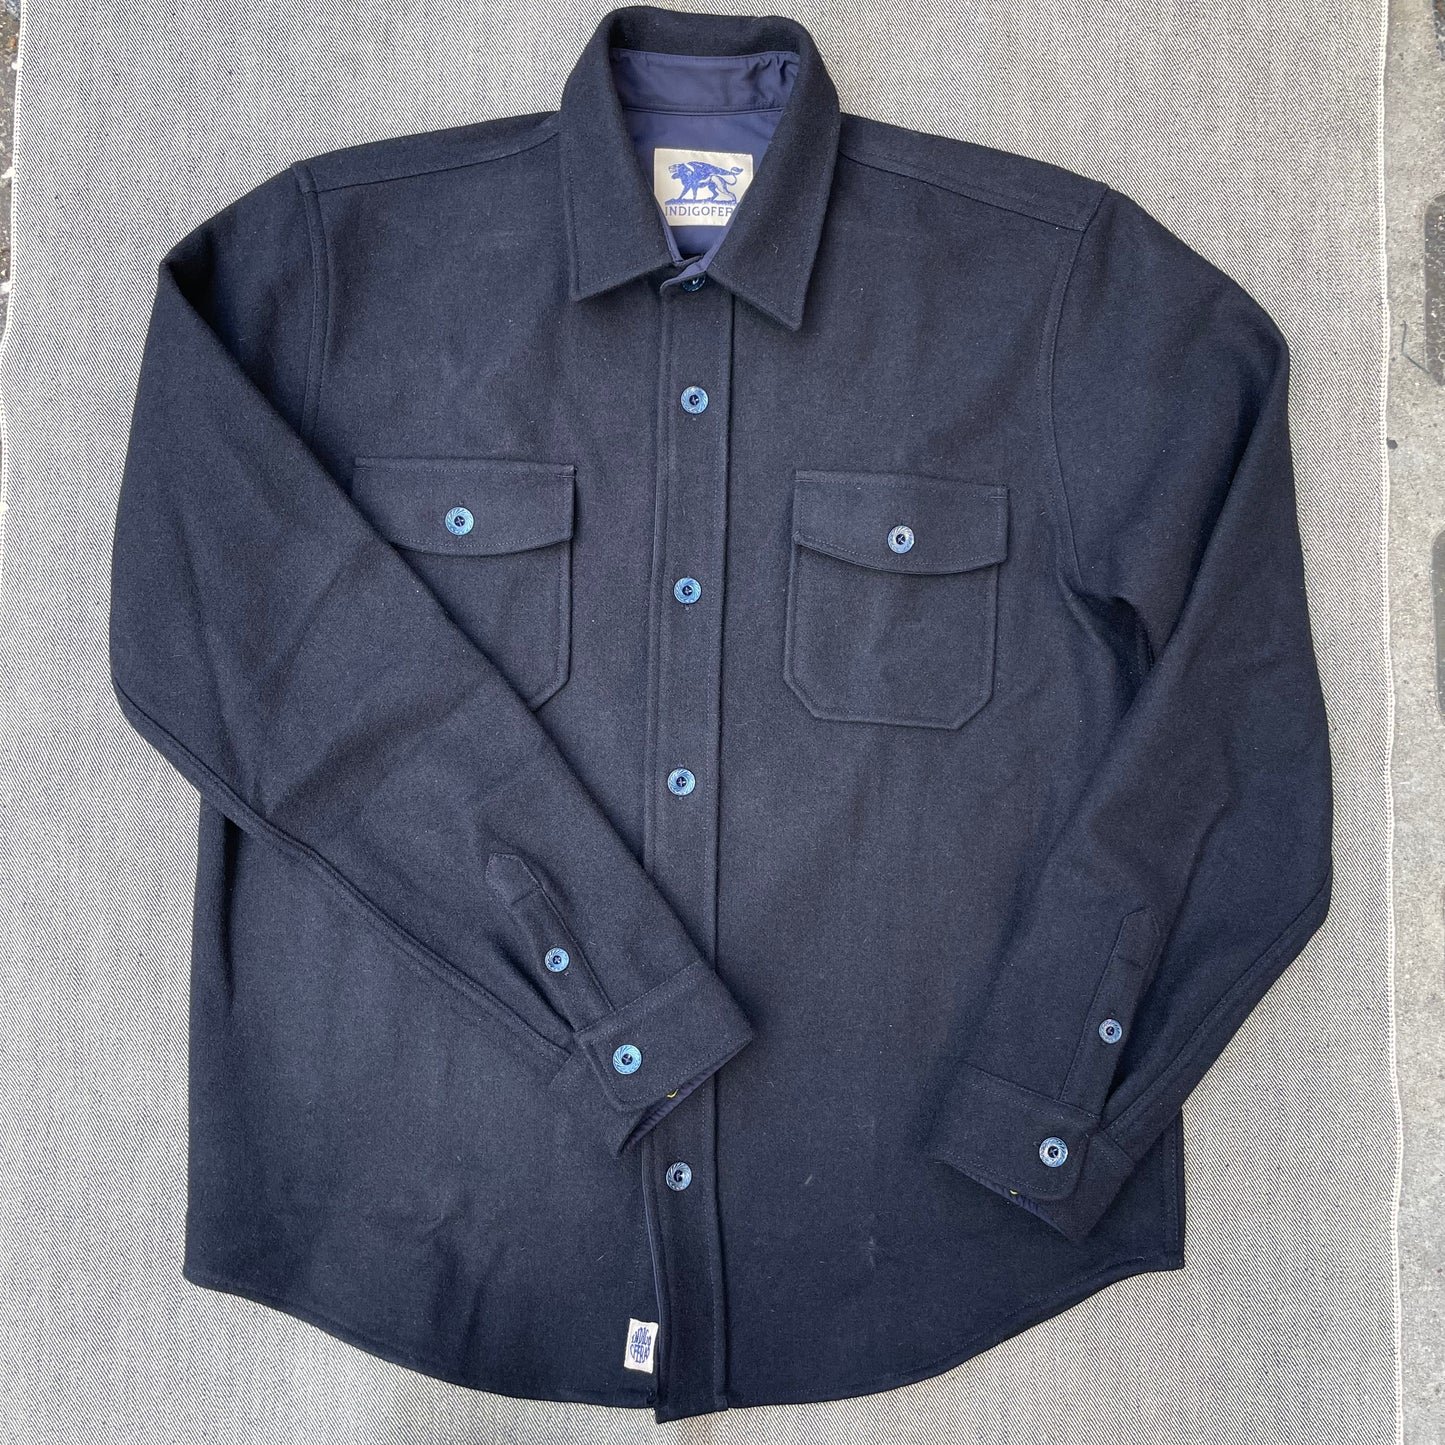 Indigofera - Iconic Shirt Melton Wool Navy